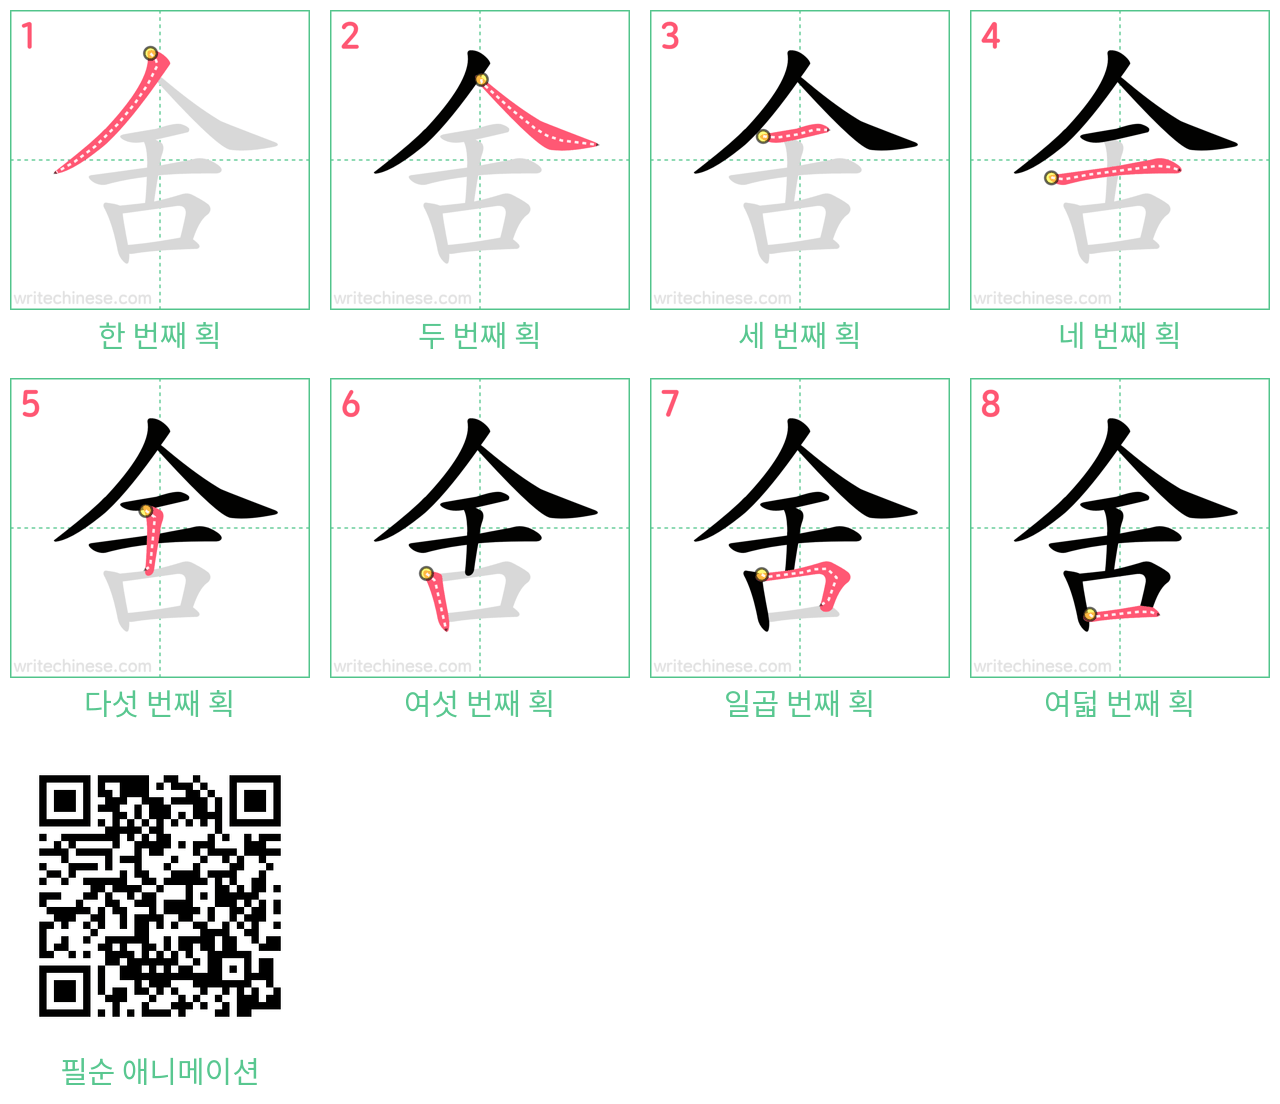 舍 step-by-step stroke order diagrams